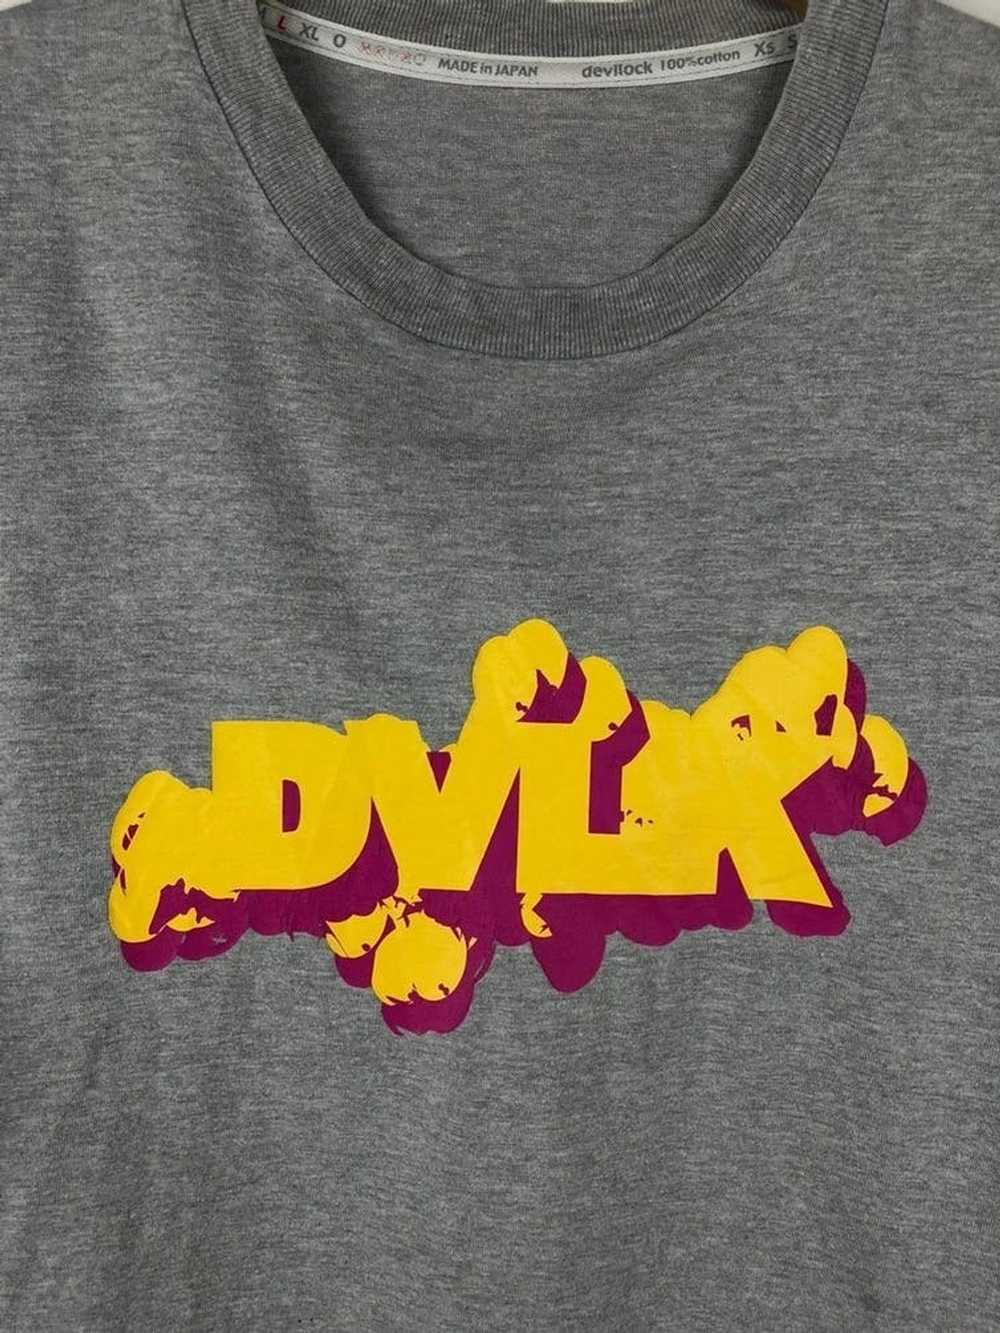 Devilock × Japanese Brand DVLK Devilock T-Shirt - image 3